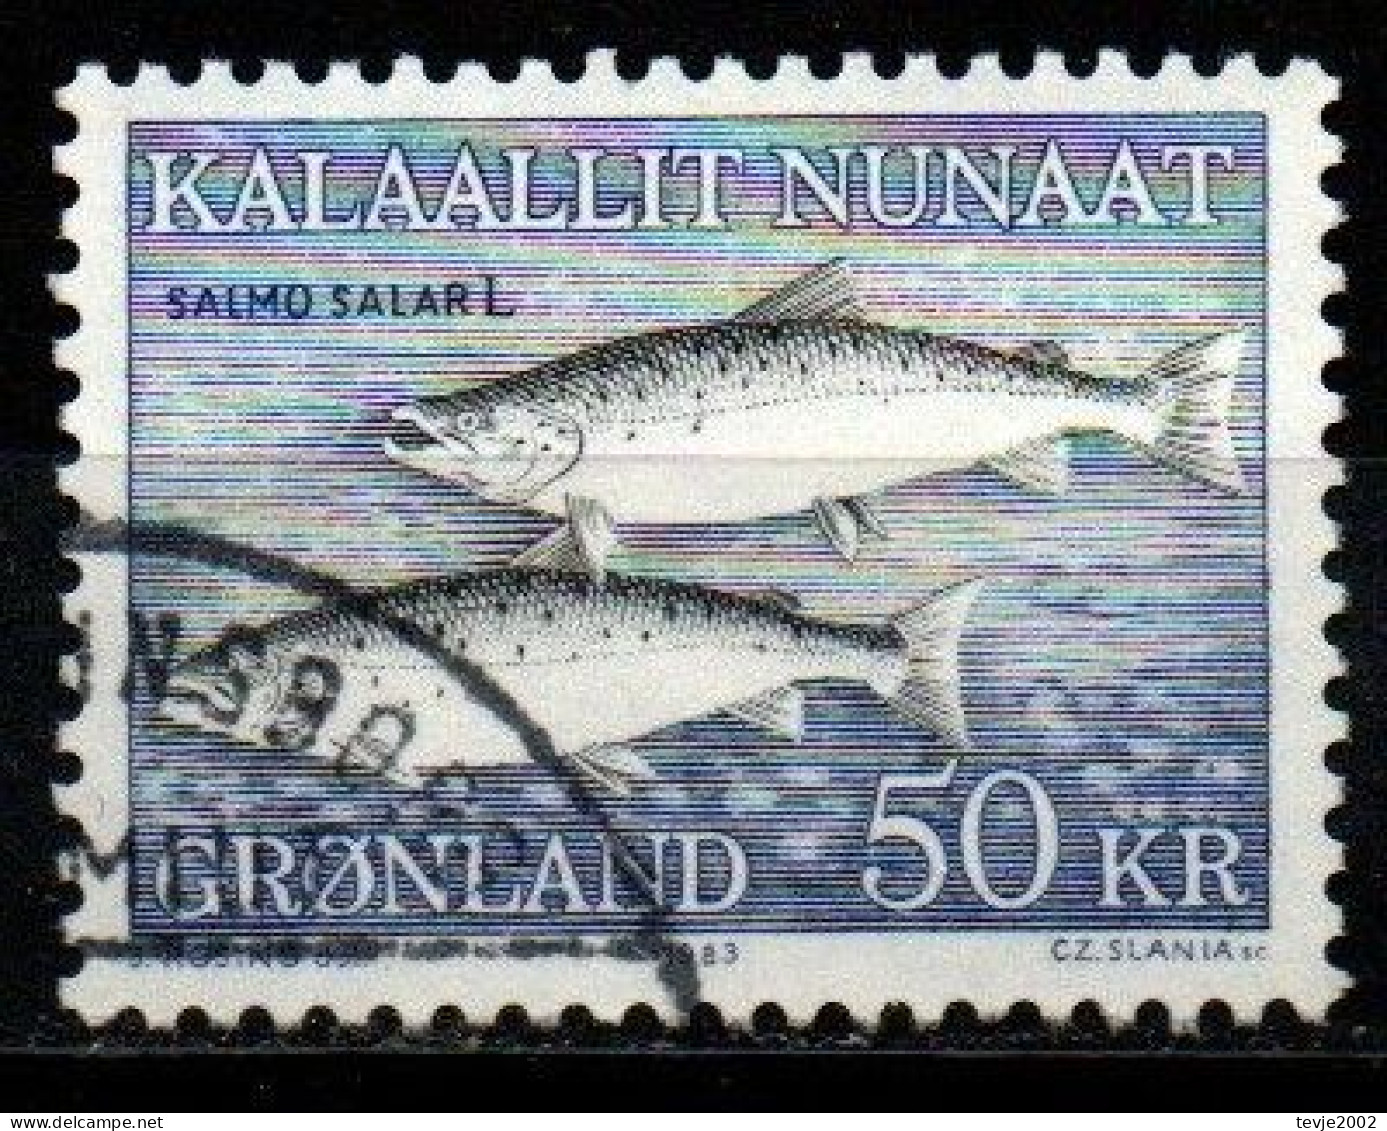 Grönland 1983 - Mi.Nr. 140 - Gestempelt Used - Tiere Animals Fische Fishes - Usati